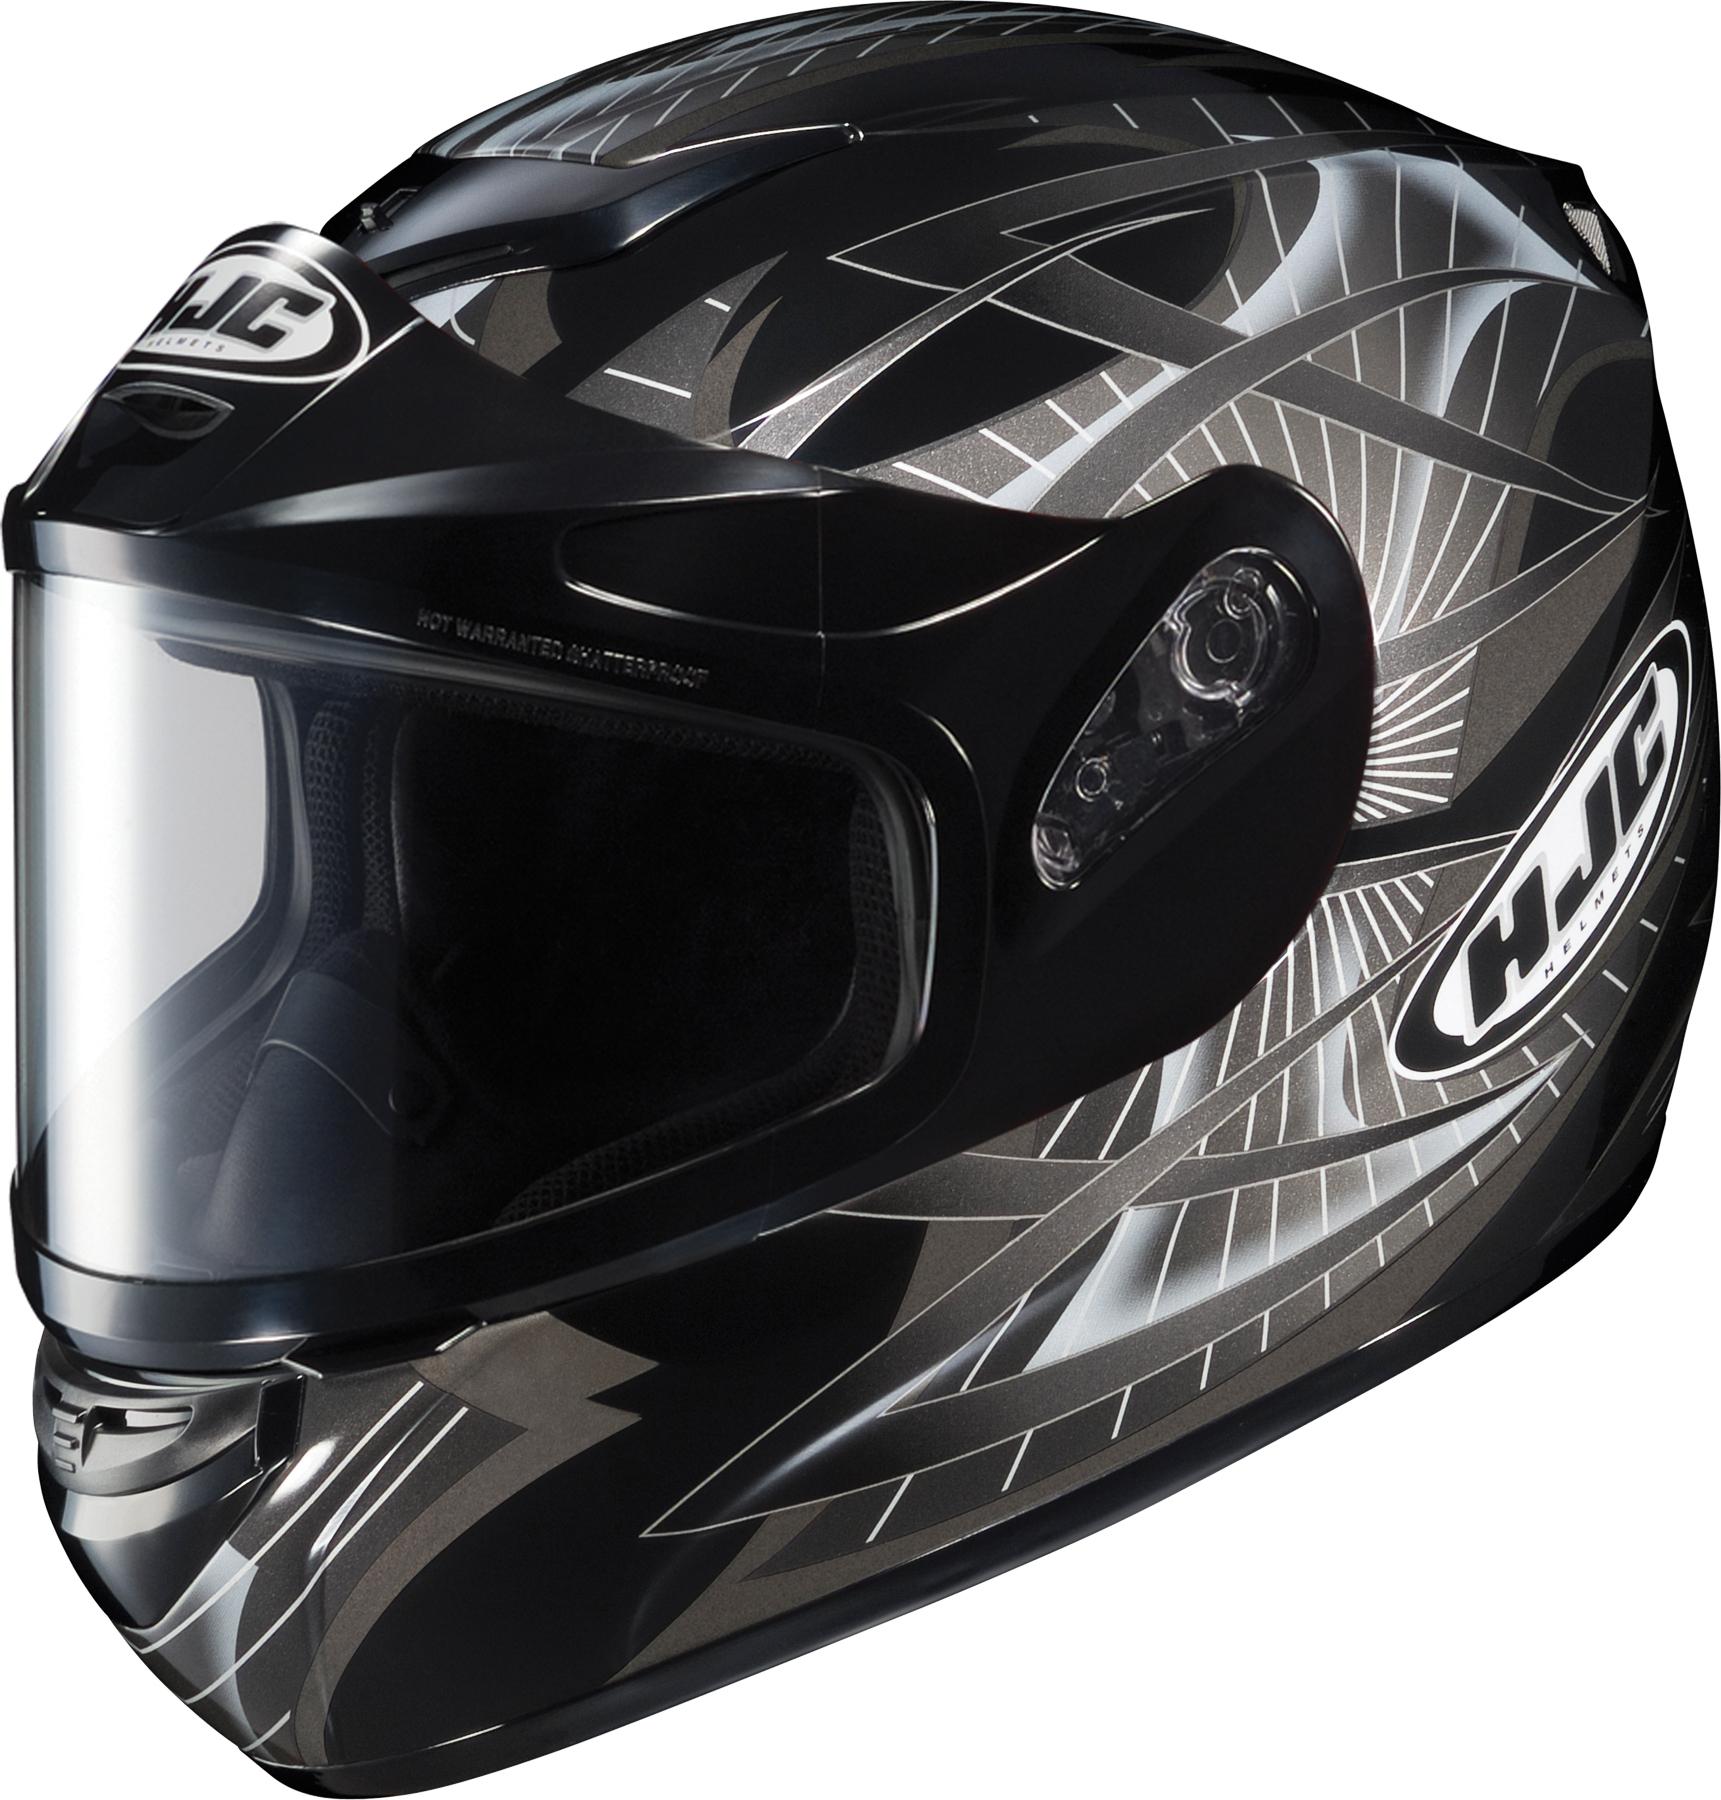 Hjc cs-r2 storm full face snowmobile helmet black size large